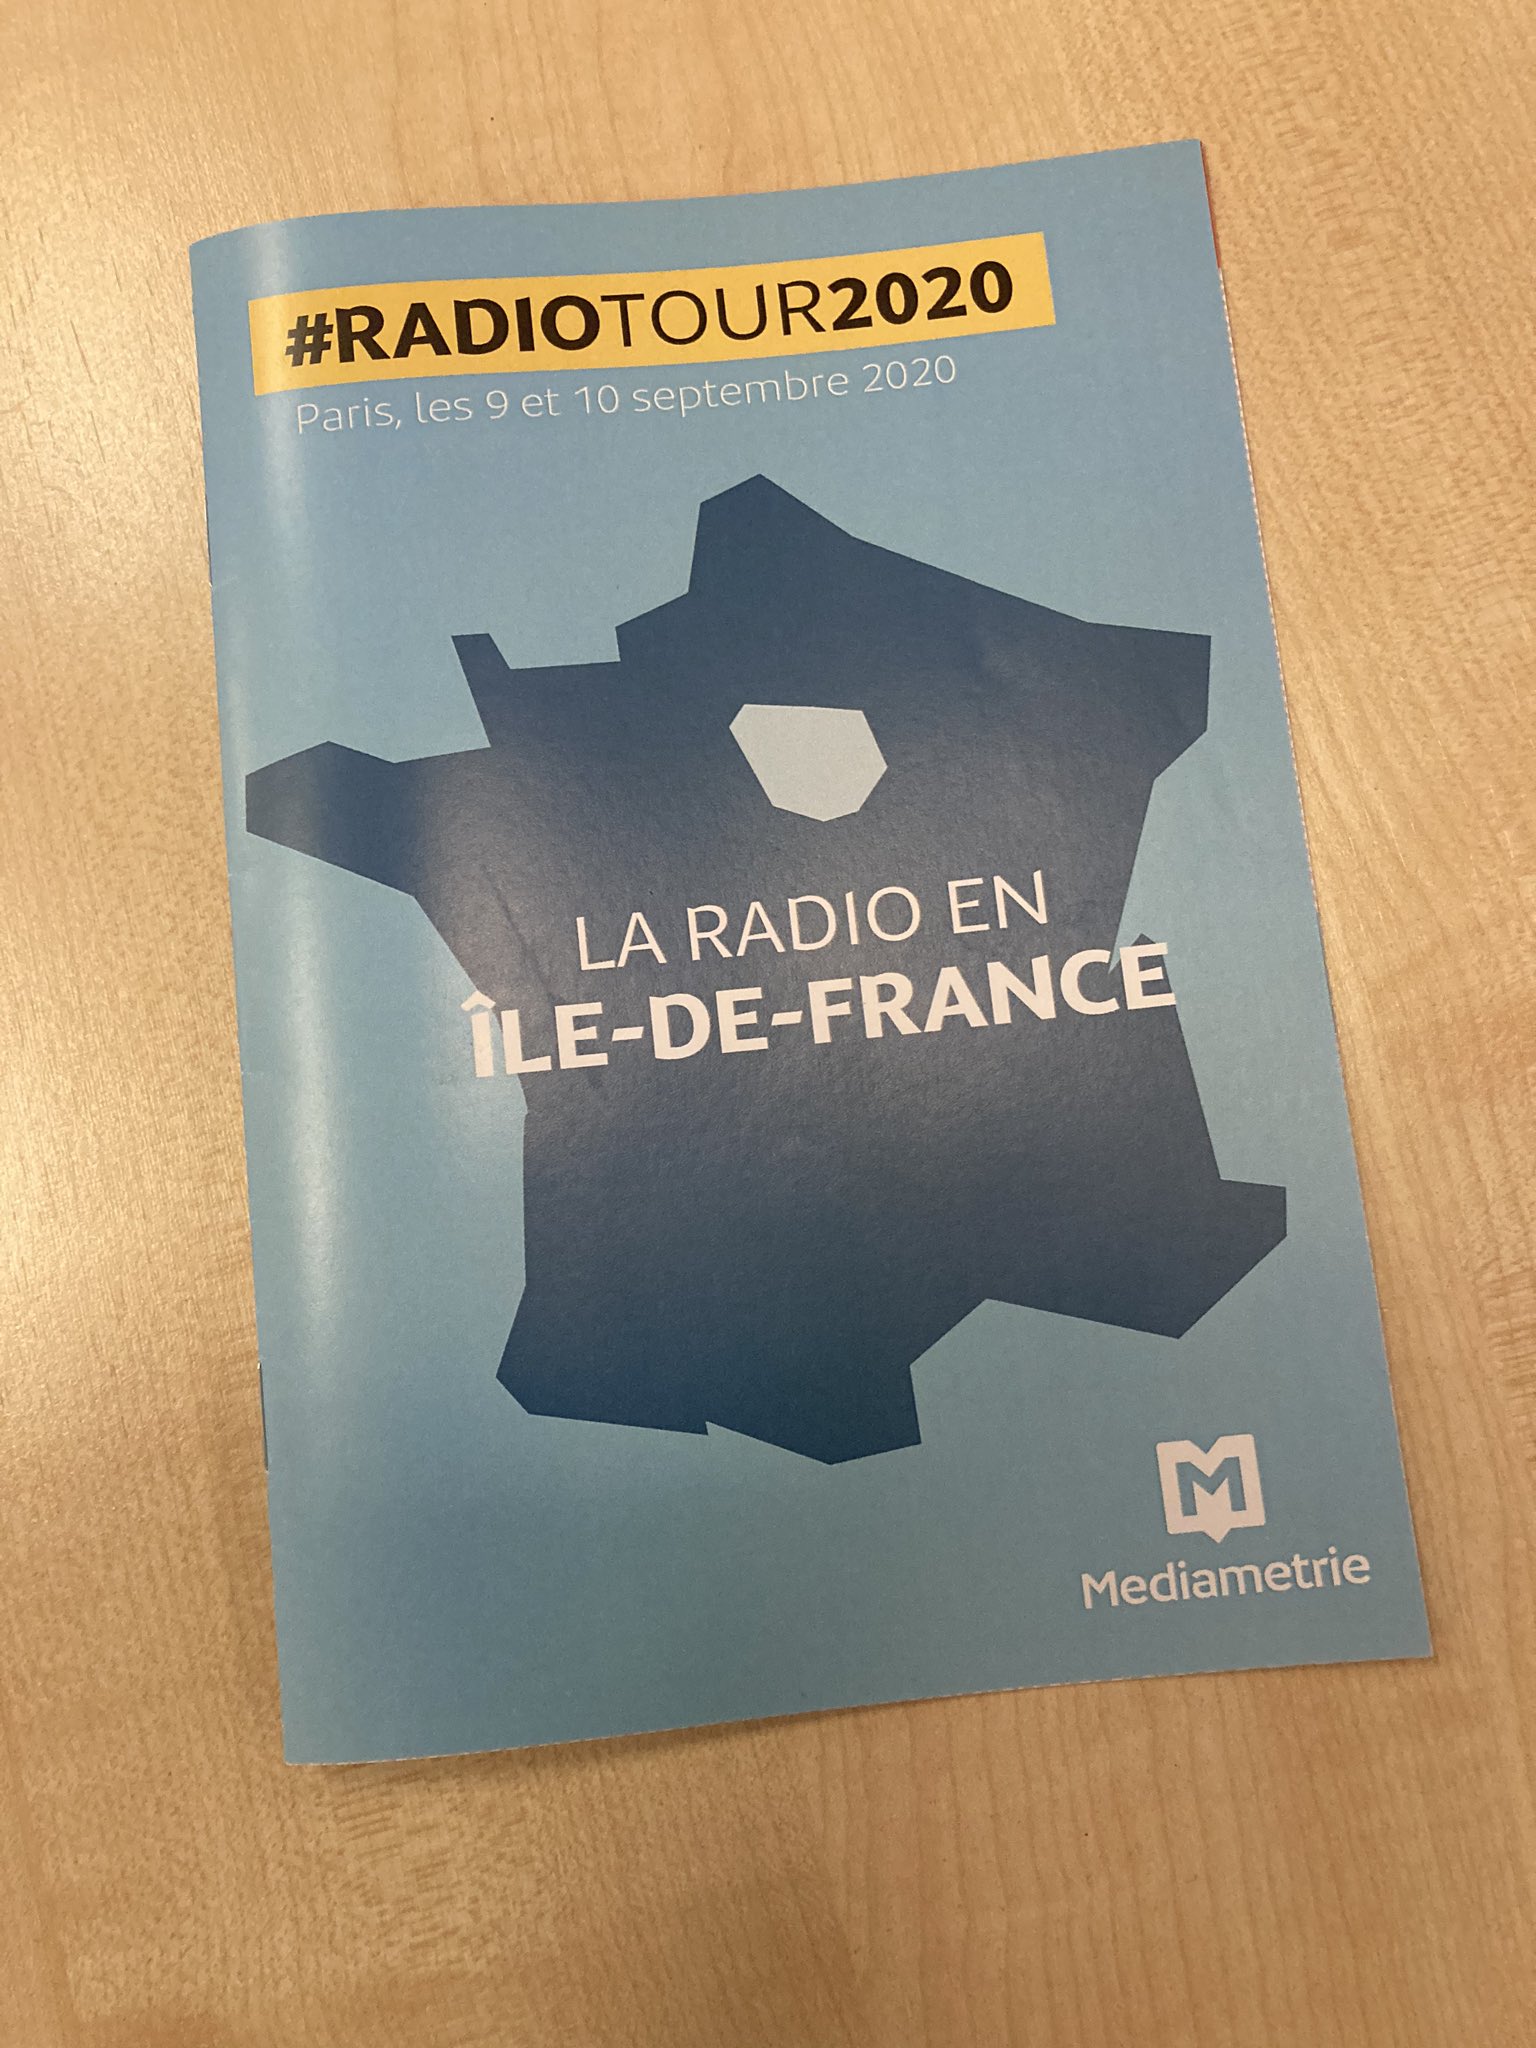 Dans cette publication de @Mediametrie sont compilés des chiffres exclusifs de l’audience à Paris. Chiffres dévoilés à partir de 09h30 par @GDetrousselle lors du #RadioTour au @StudecWeb à Paris.